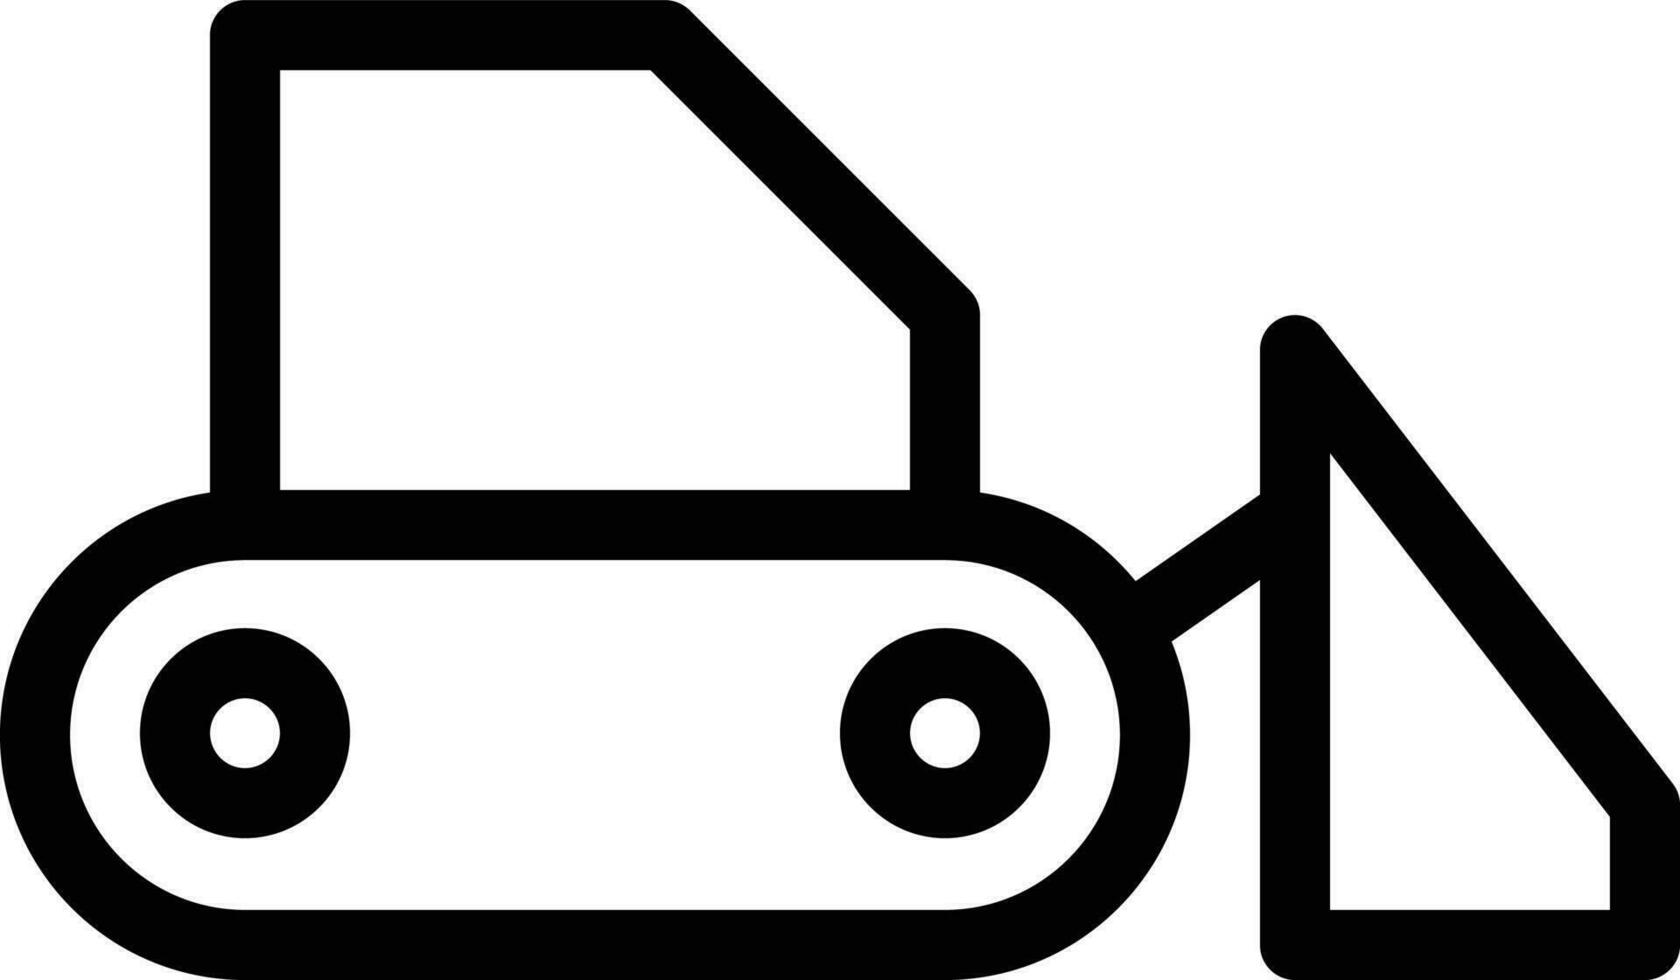 illustrazione vettoriale del bulldozer su uno sfondo. simboli di qualità premium. icone vettoriali per il concetto e la progettazione grafica.